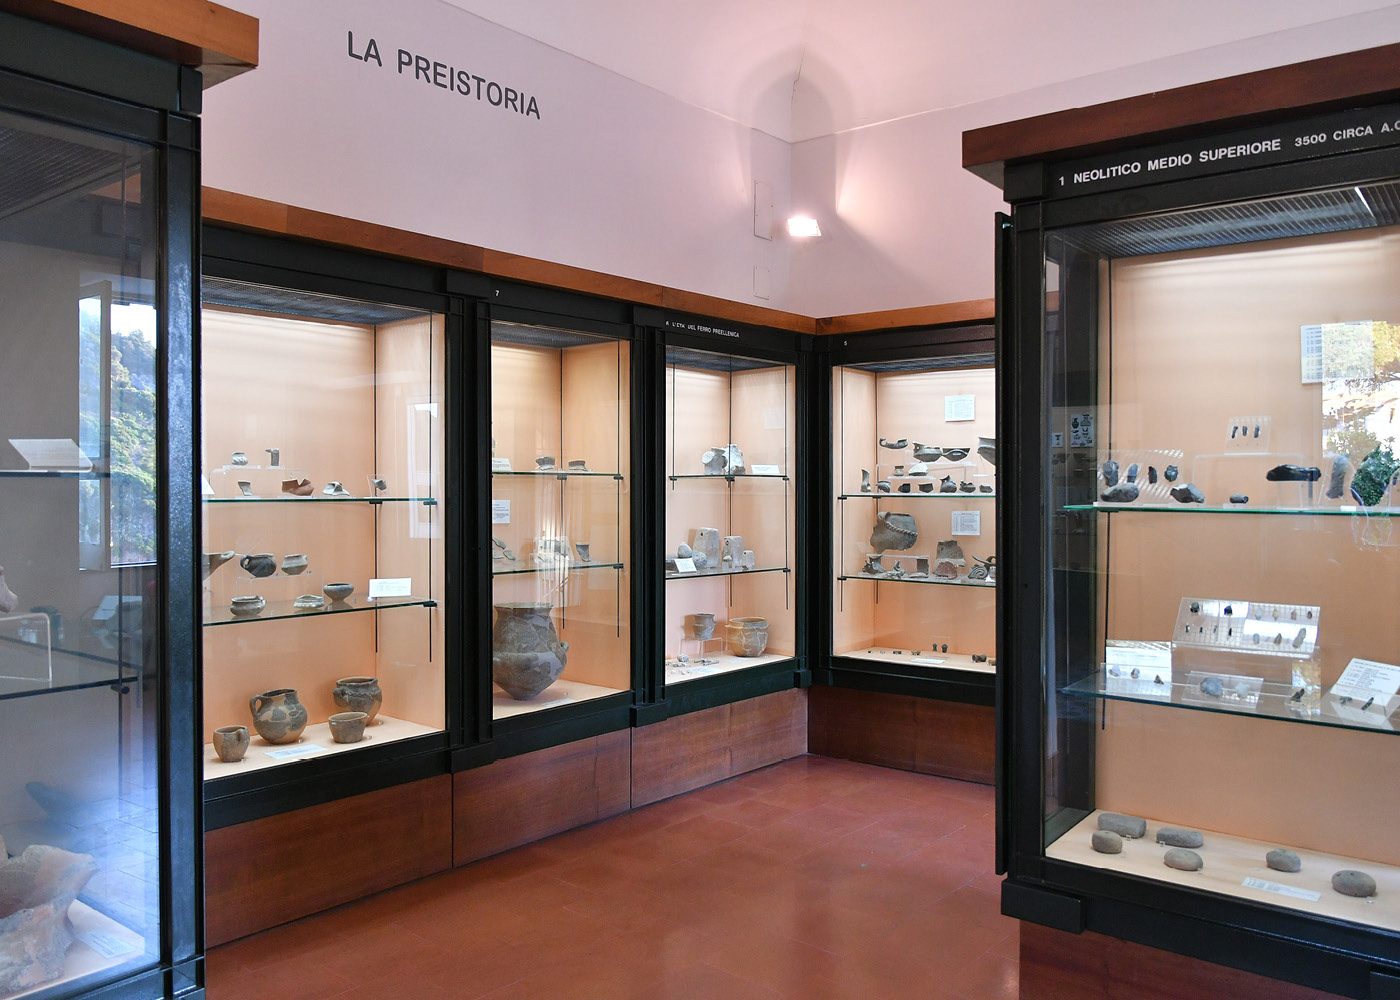 storia-museo-di-pithecusae-g3